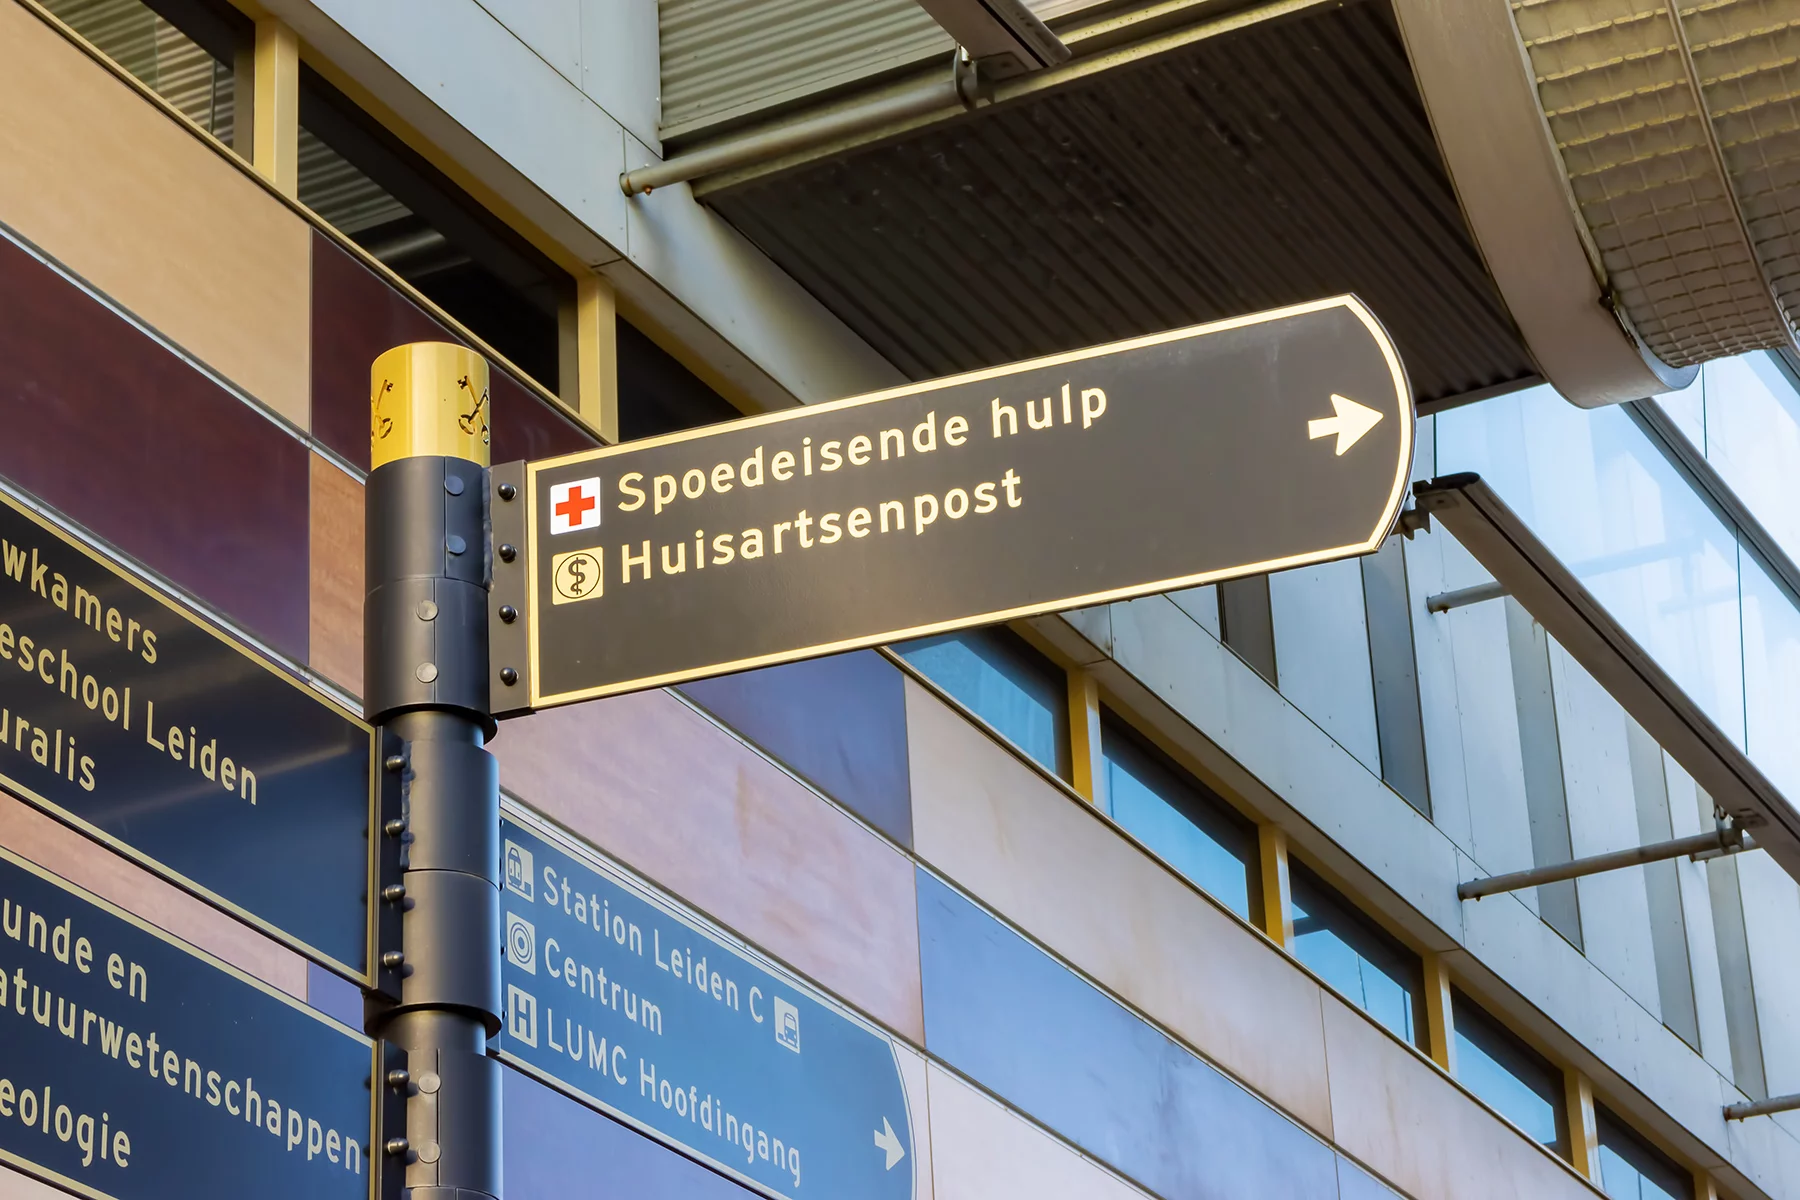 Huisartsenpost after-hour doctors in the Netherlands